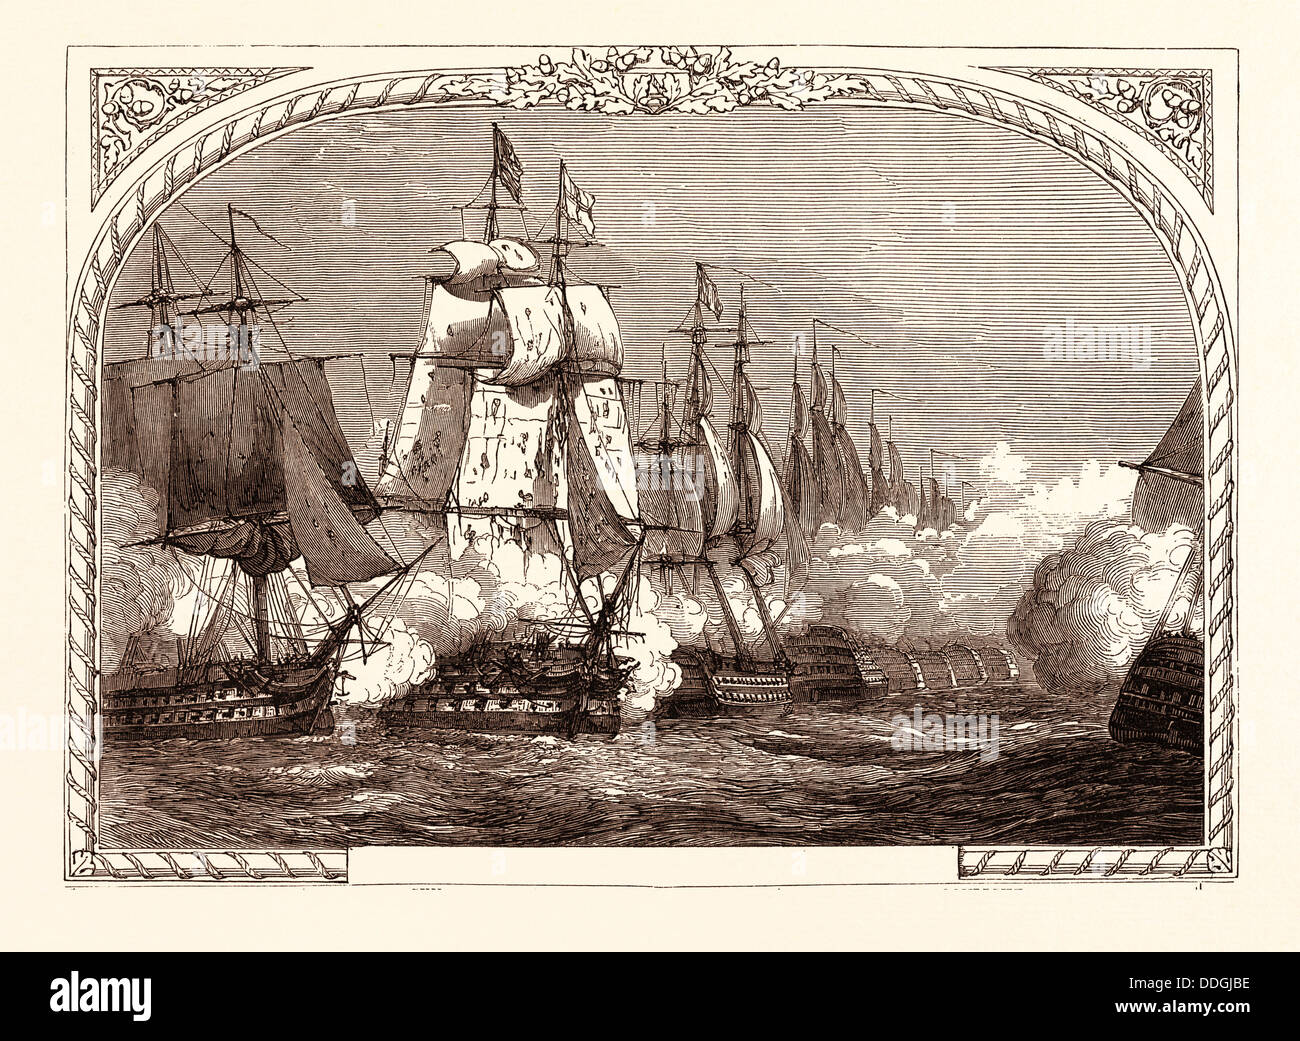 Schlacht von TRAFALGAR (NELSON), 21. Oktober 1805, Kap Trafalgar in Süd-west-Spanien Stockfoto